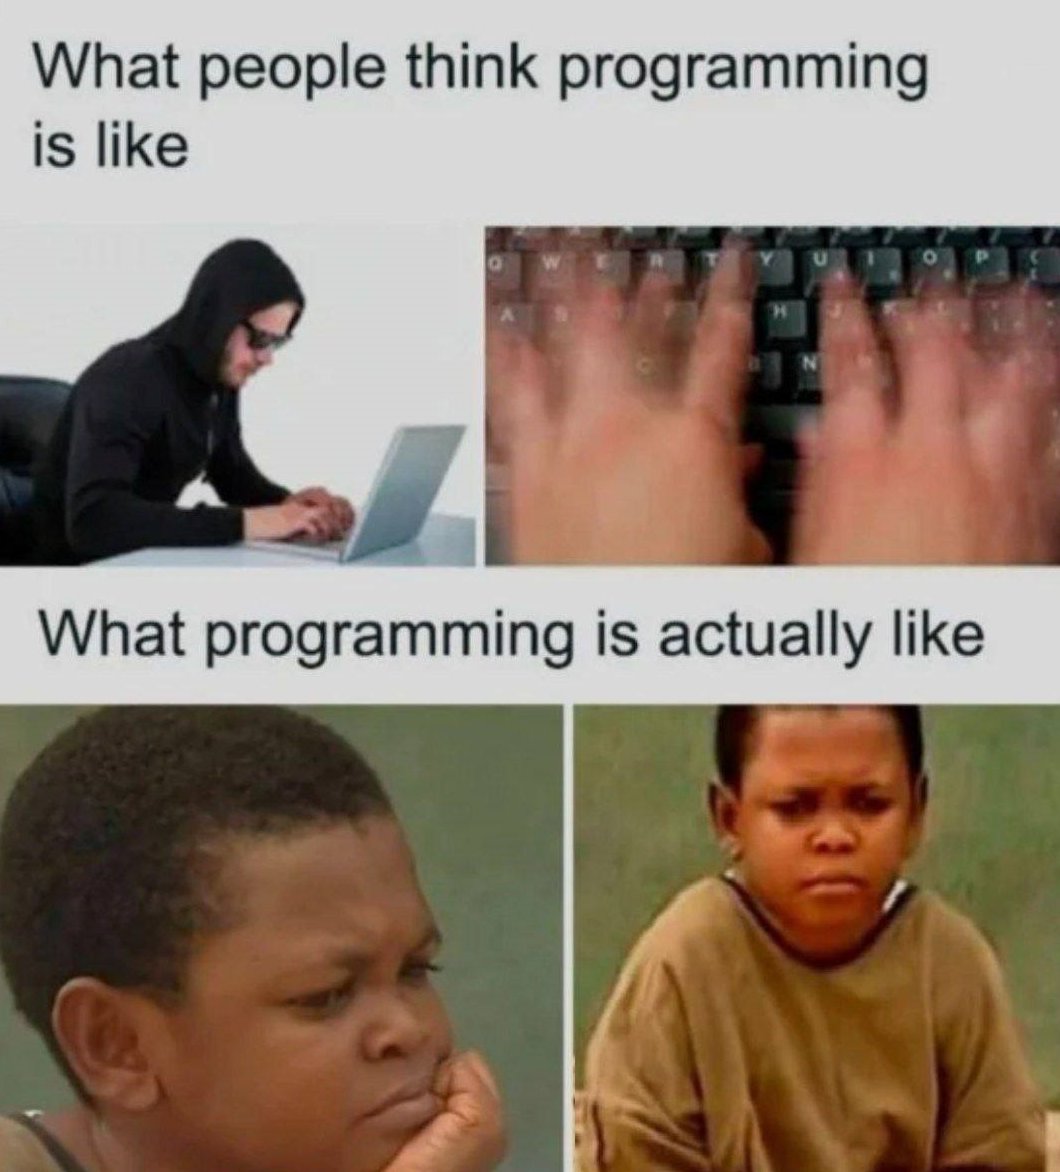 Expectations vs. Reality 🧠
#ProgrammingHumor #jokes #meme #developers #Software